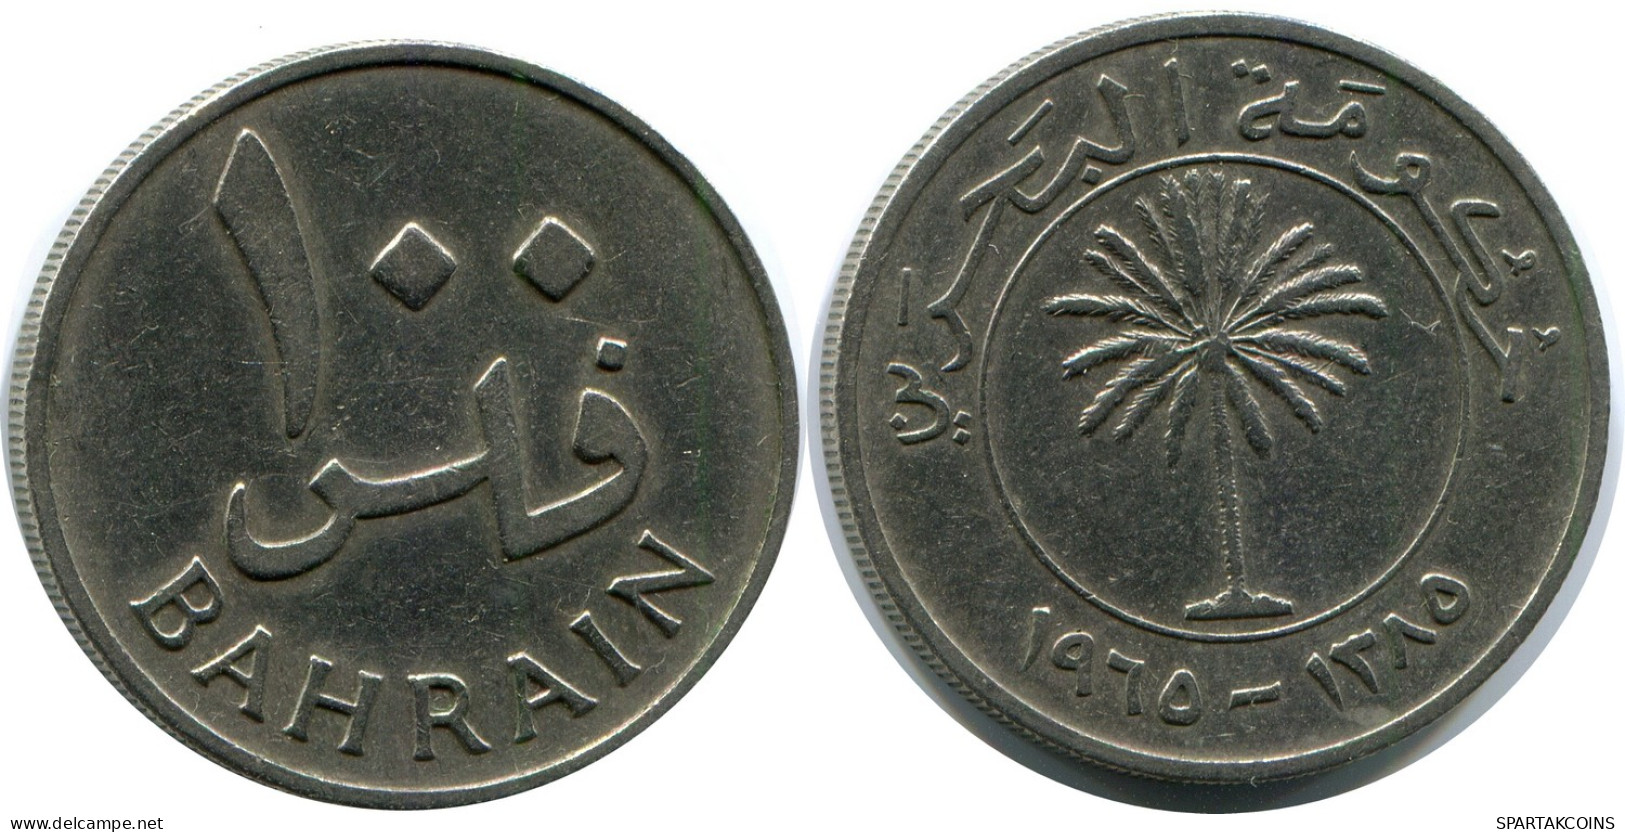 100 FILS 1970 BAHRAIN Coin #AP977.U - Bahrein